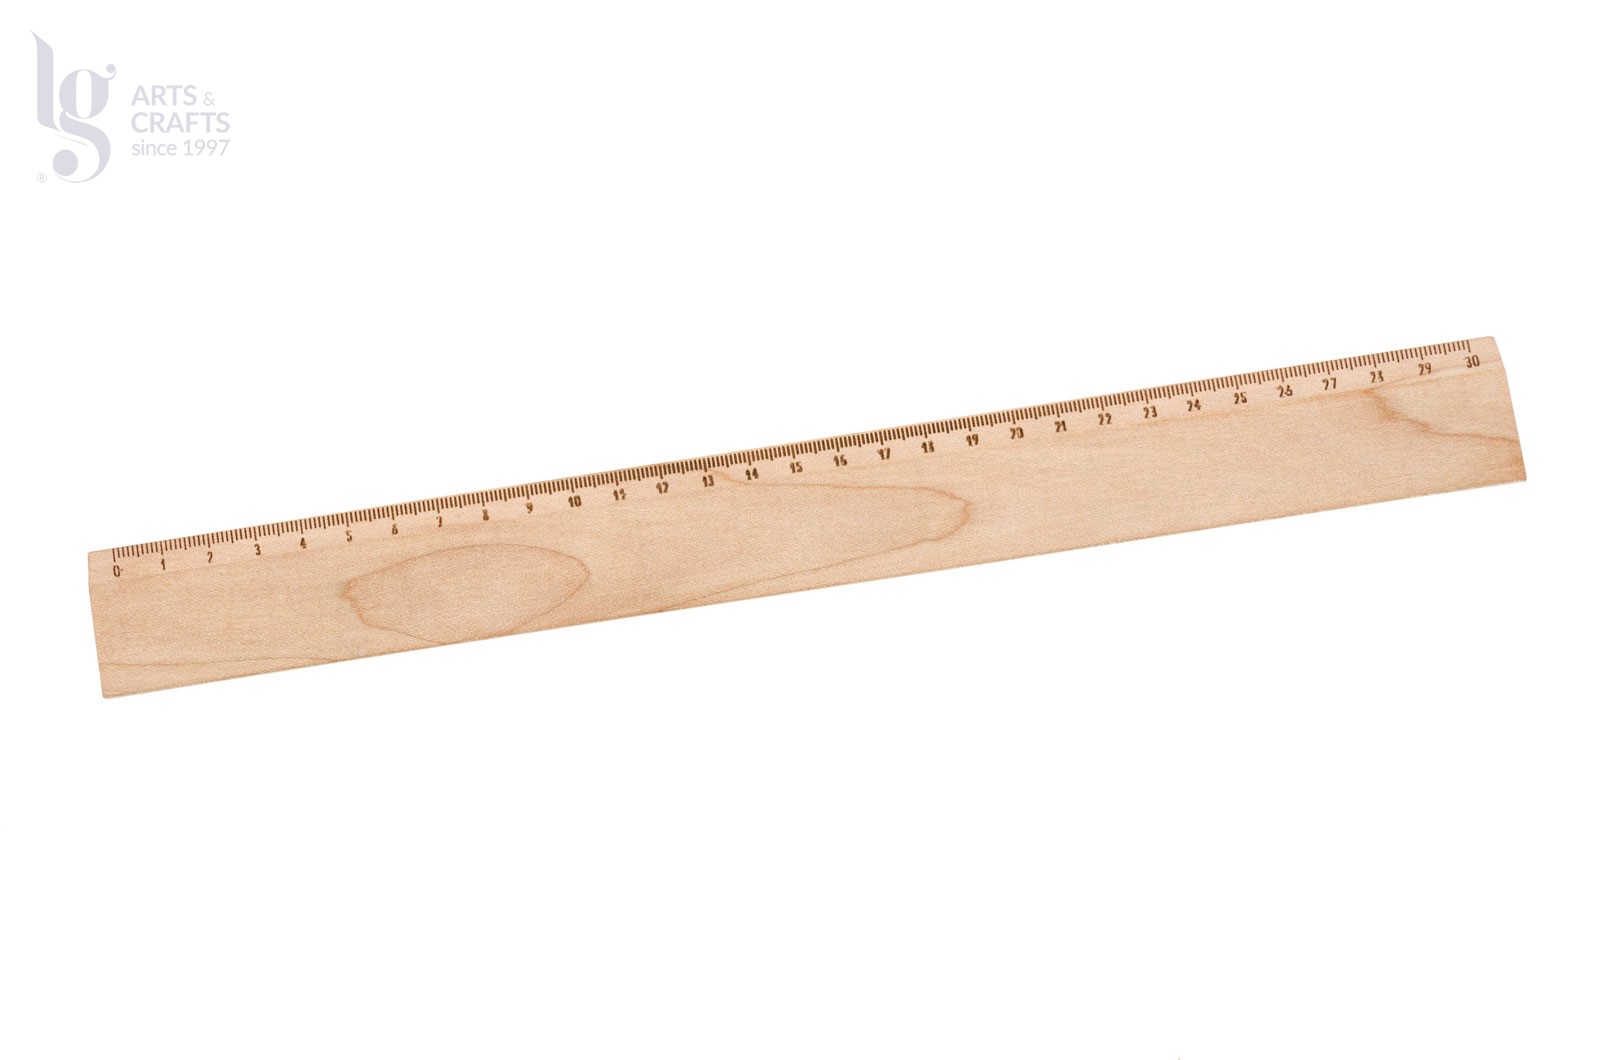 5cm ruler